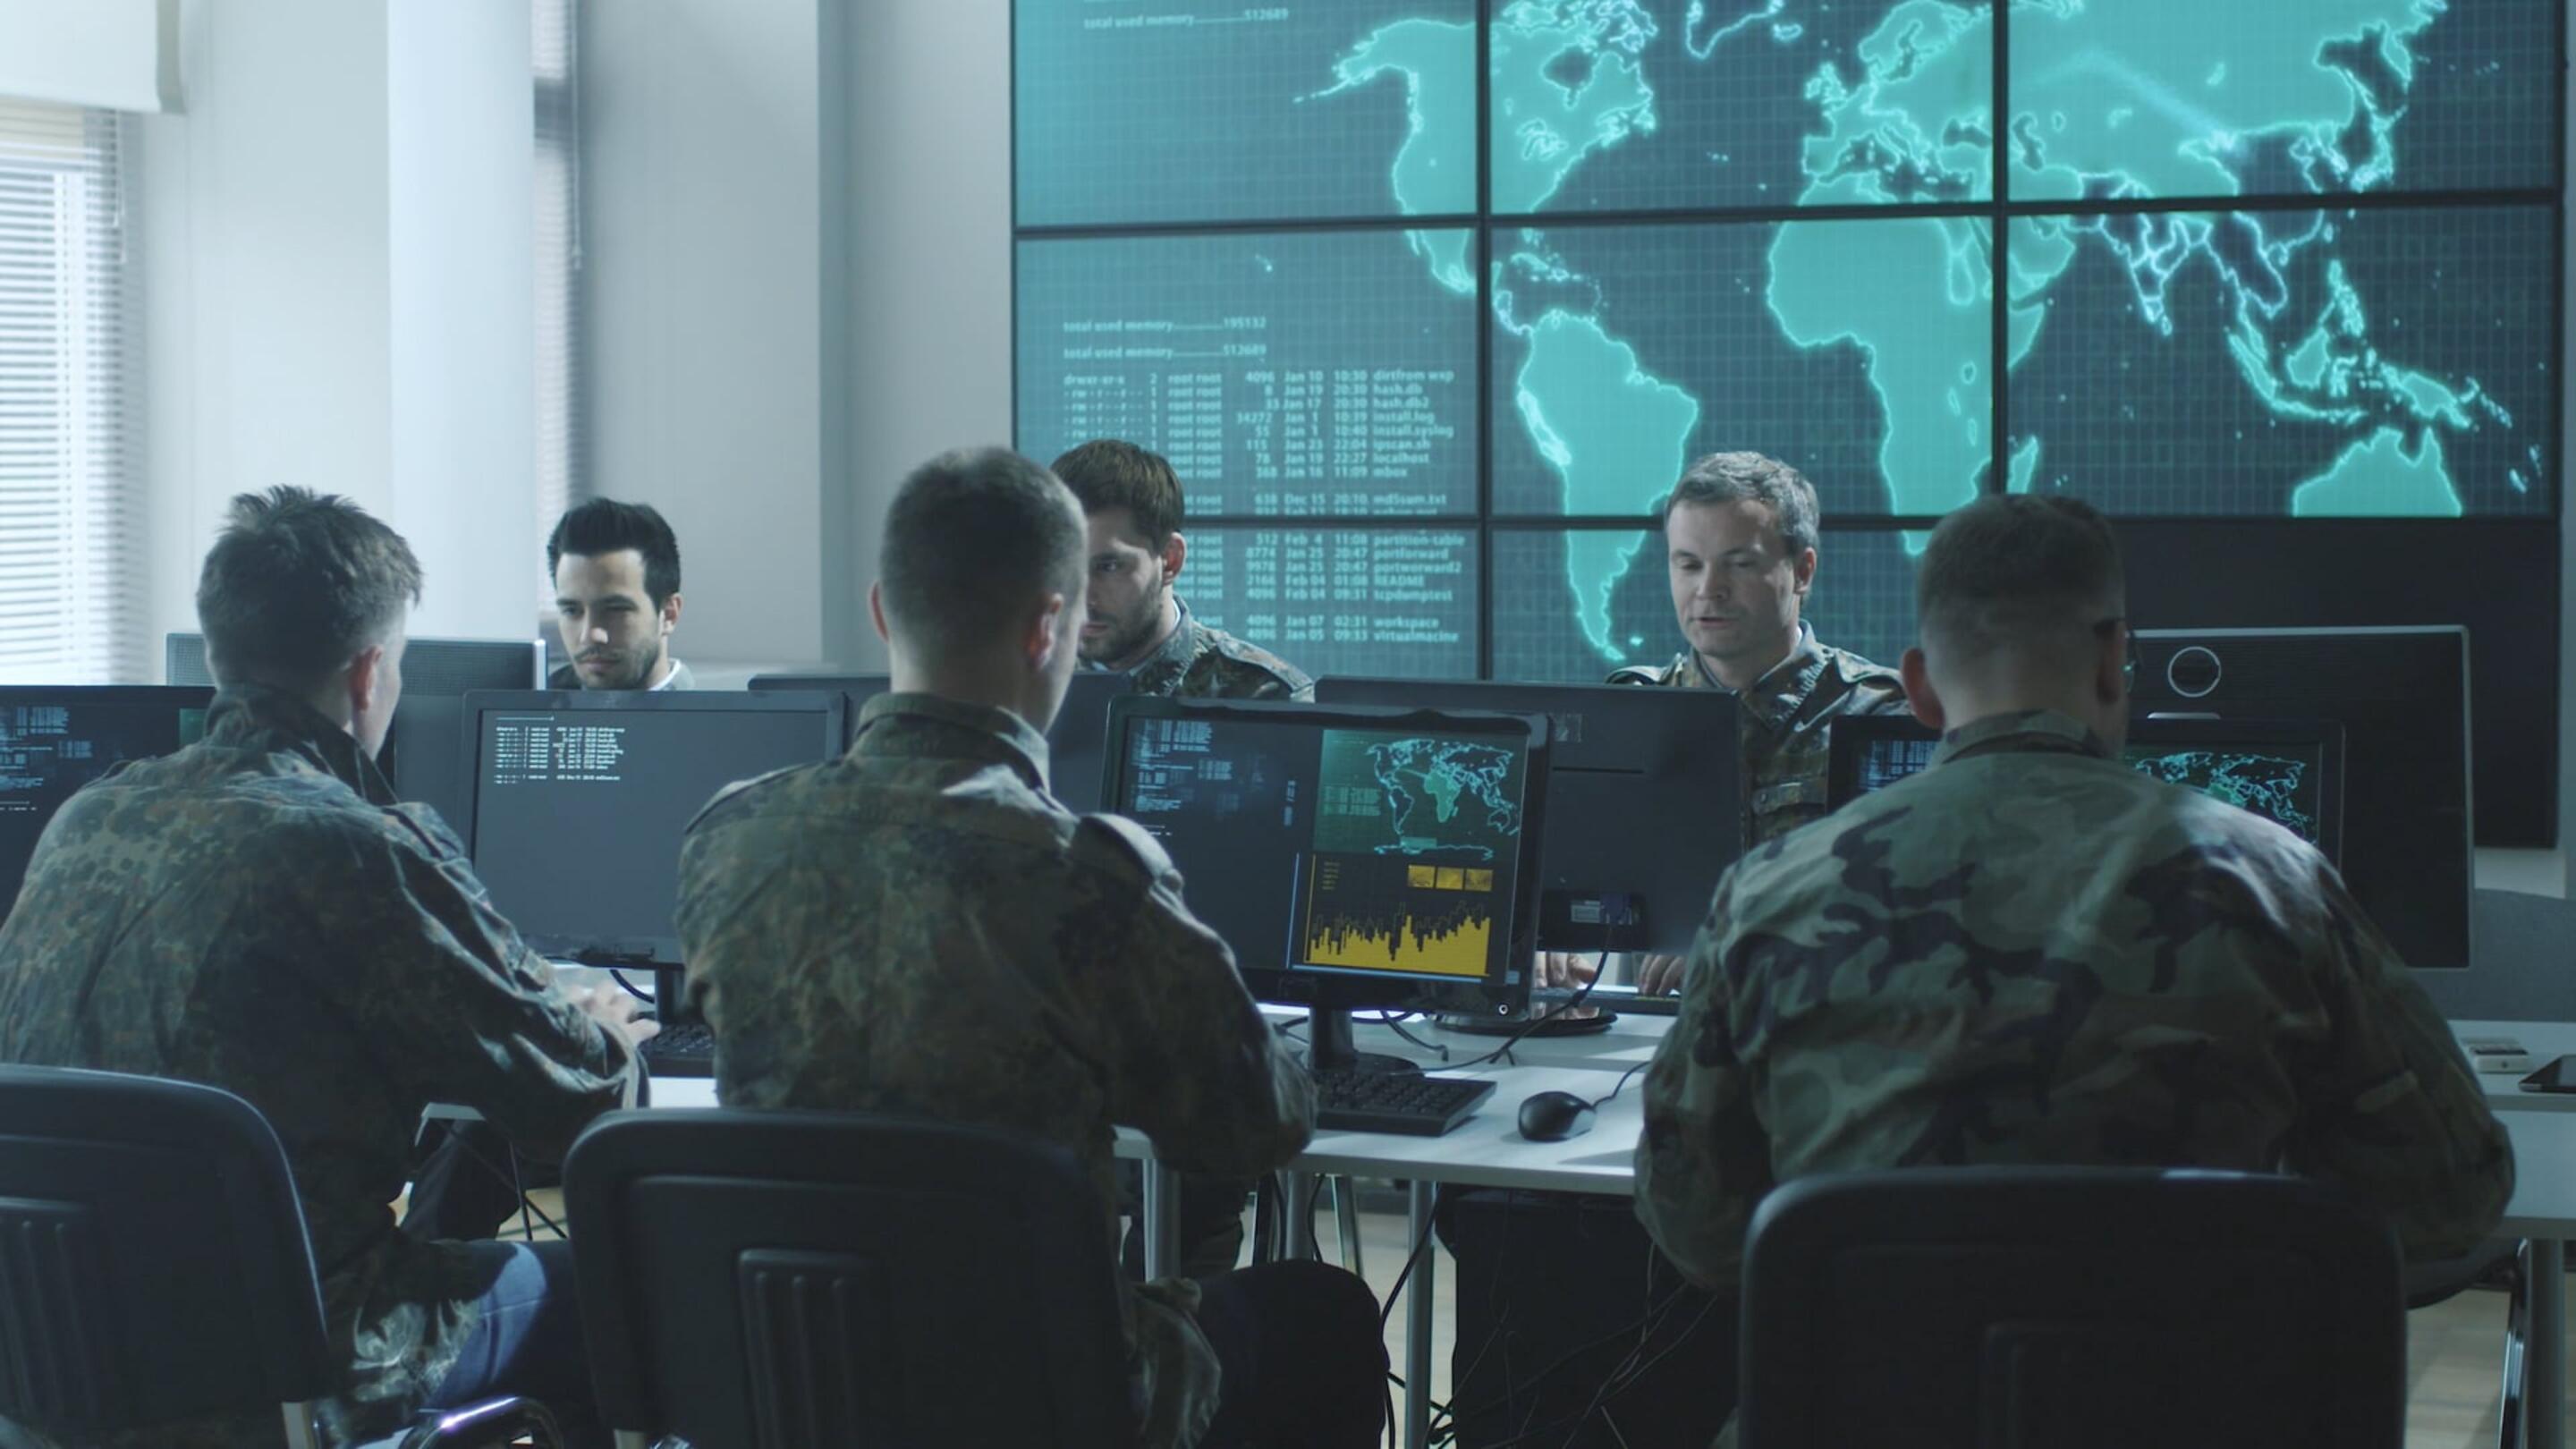 Tempest - Tempest um grupo de homens com uniformes militares sentados em computadores